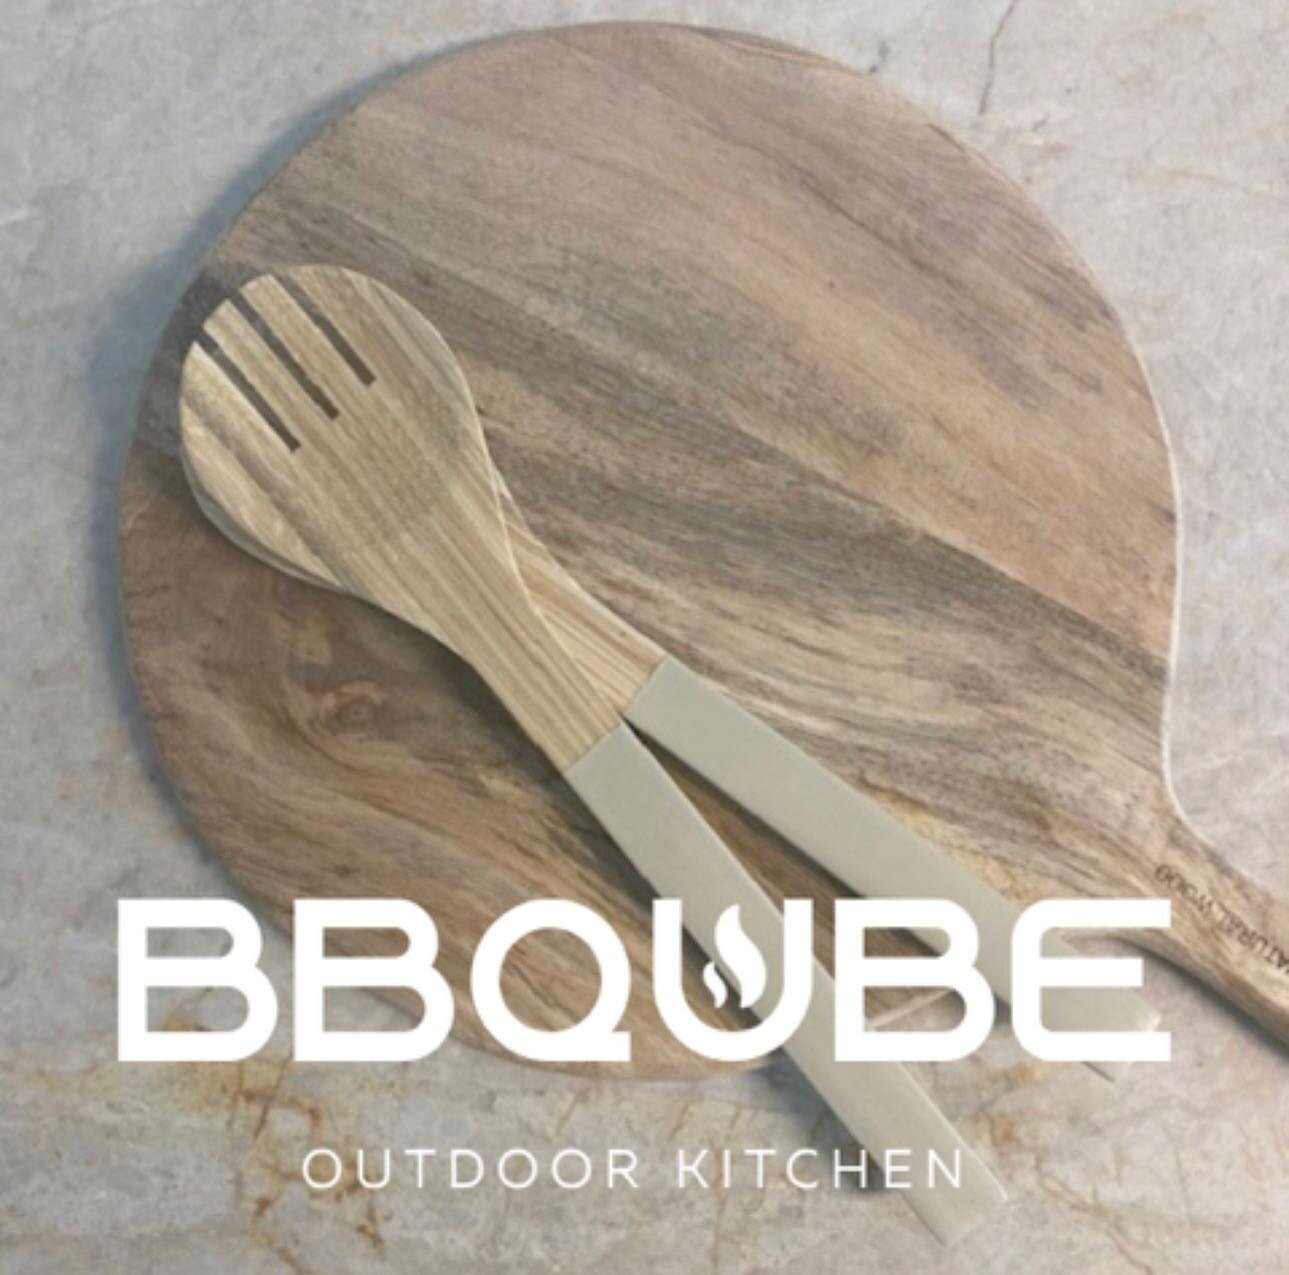 Natuursteen op een BBQUBE outdoor kitchen#outdoorkitchendesign #outdoorkitchen